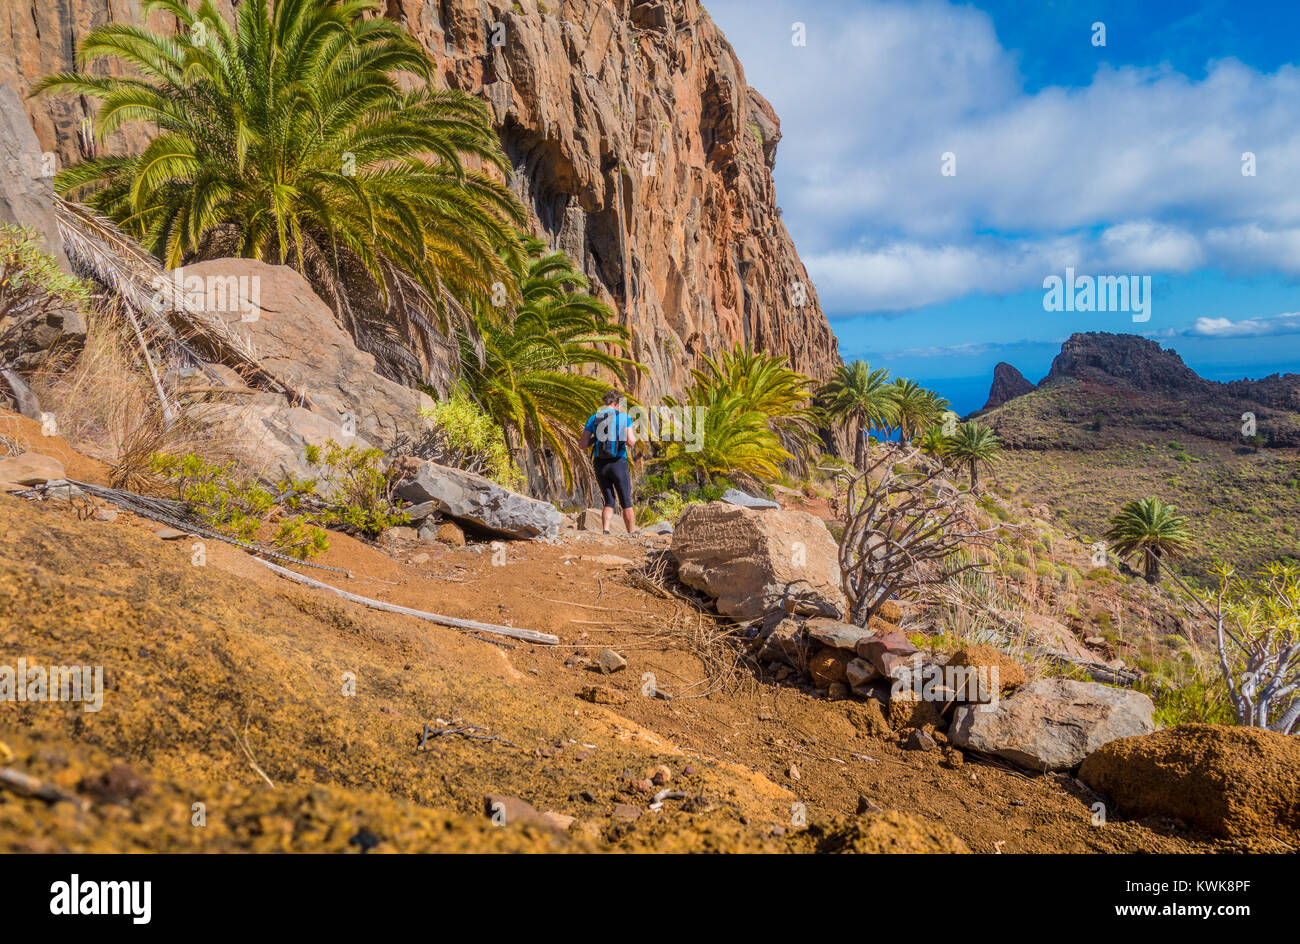 Belle vue de la randonnée touristique mâle dans un paysage exotique avec l'océan Atlantique en arrière-plan sur les îles Canaries, Espagne Banque D'Images